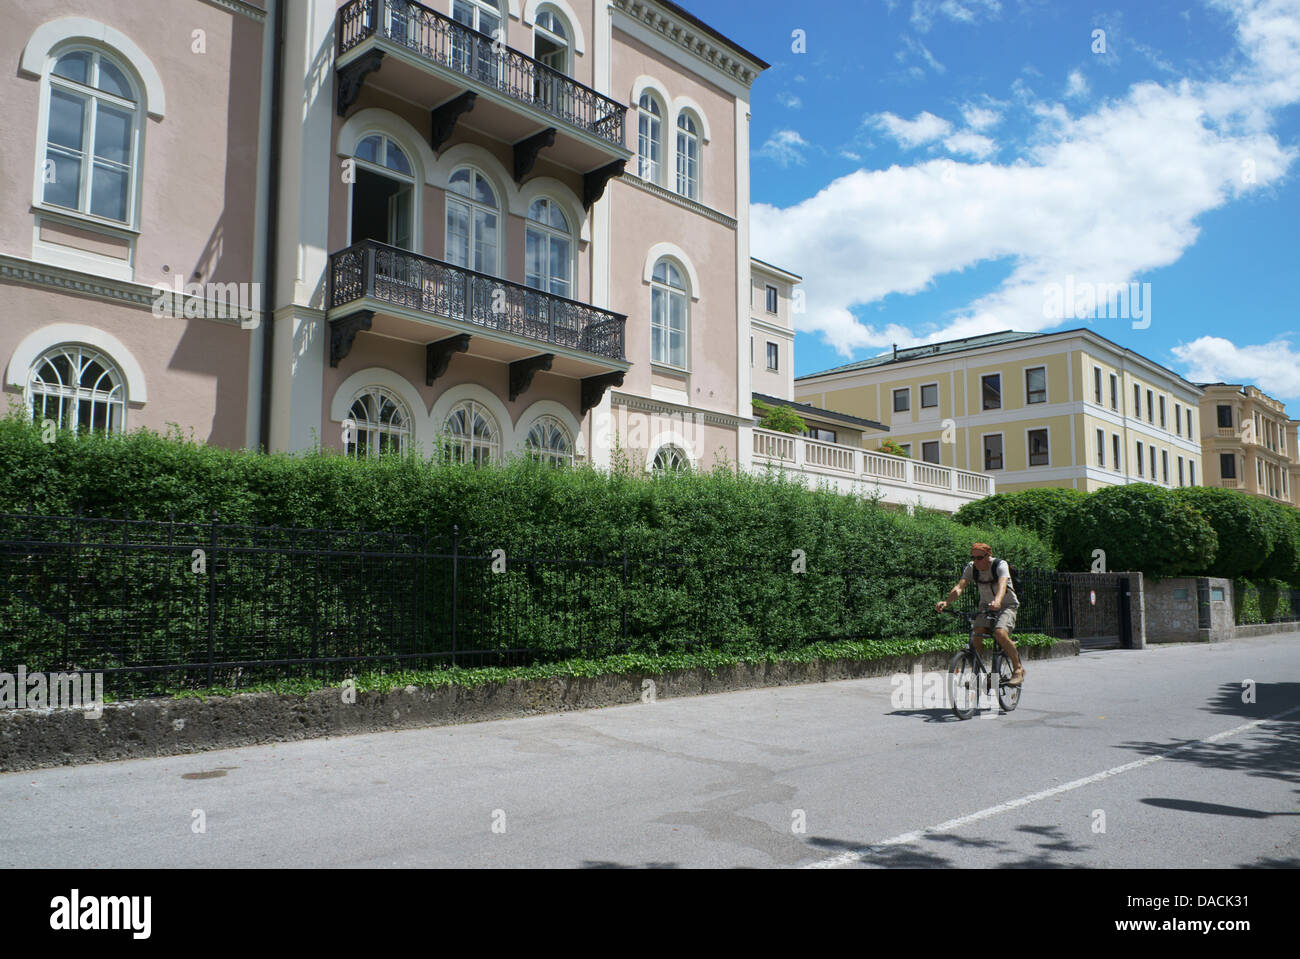 Salzburg, Austria Man riding a bicycle on Elisabethkai in the historic center of Salzburg, Austria. Stock Photo